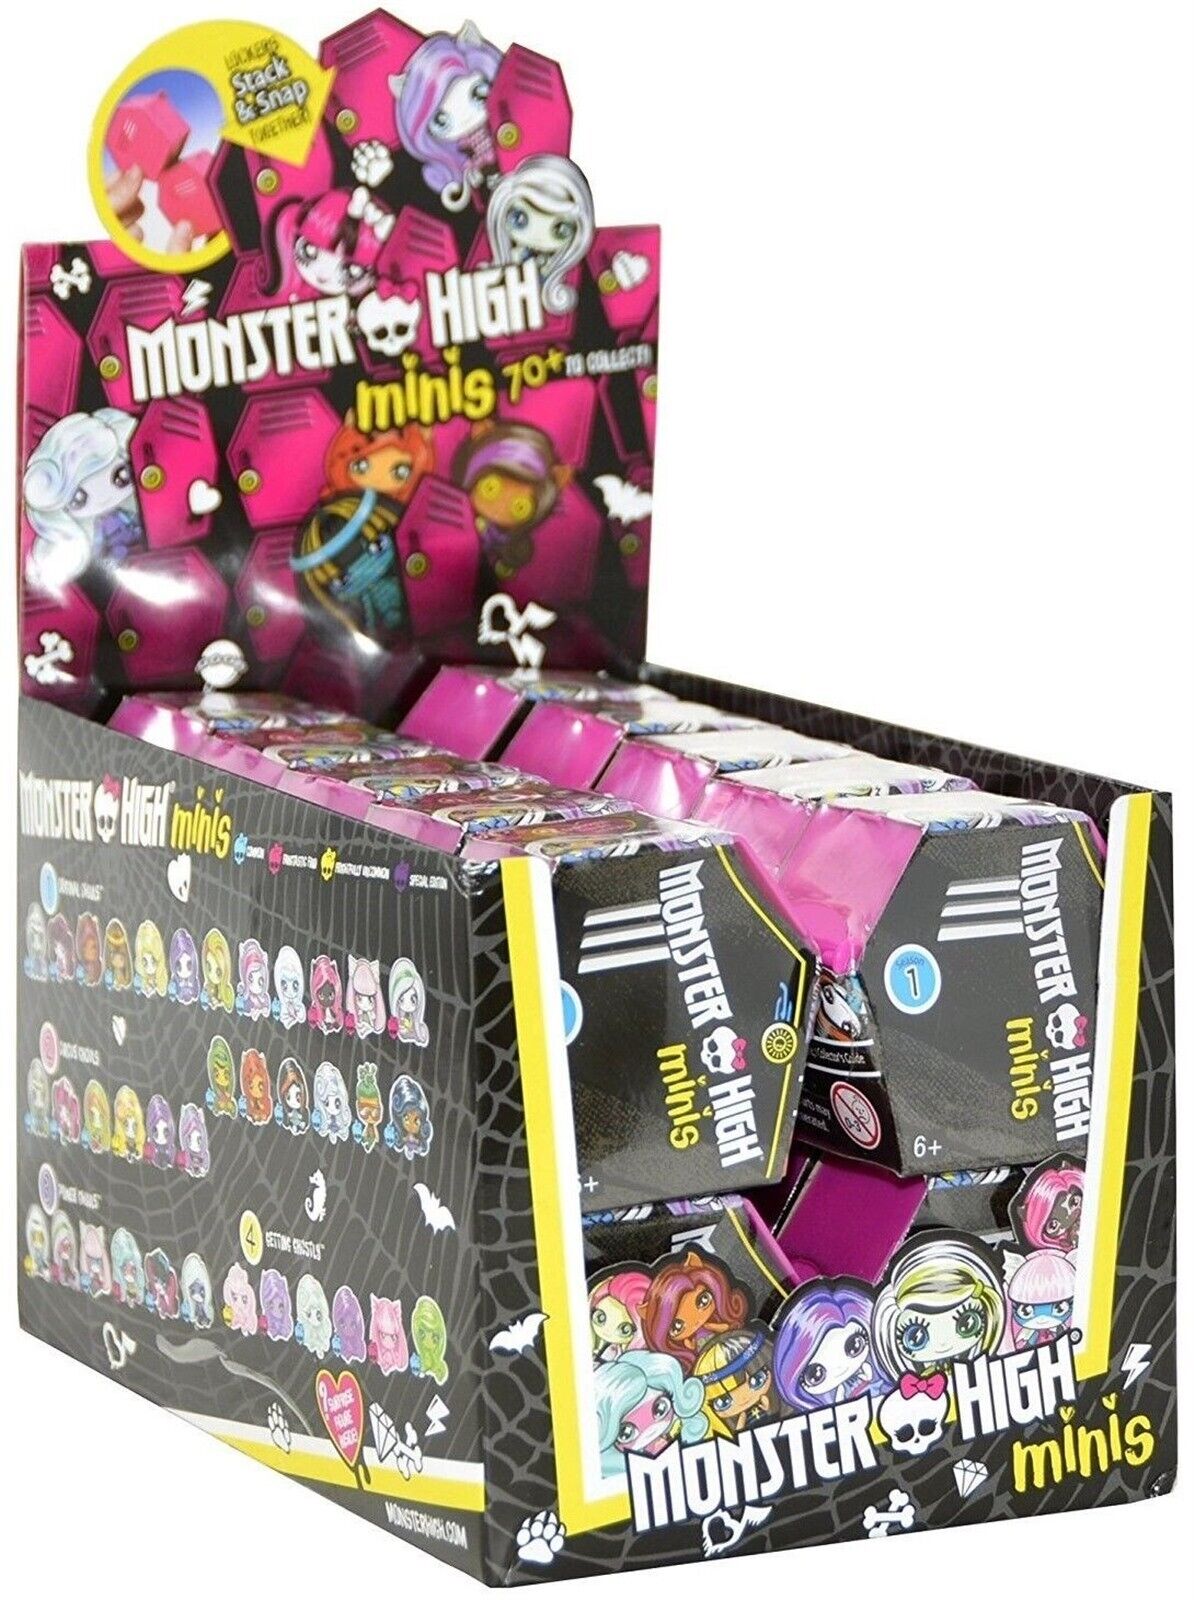 Monster High Minis! Series 1 SEALED Case of 20 mini figures! Blind Packs! Mattel